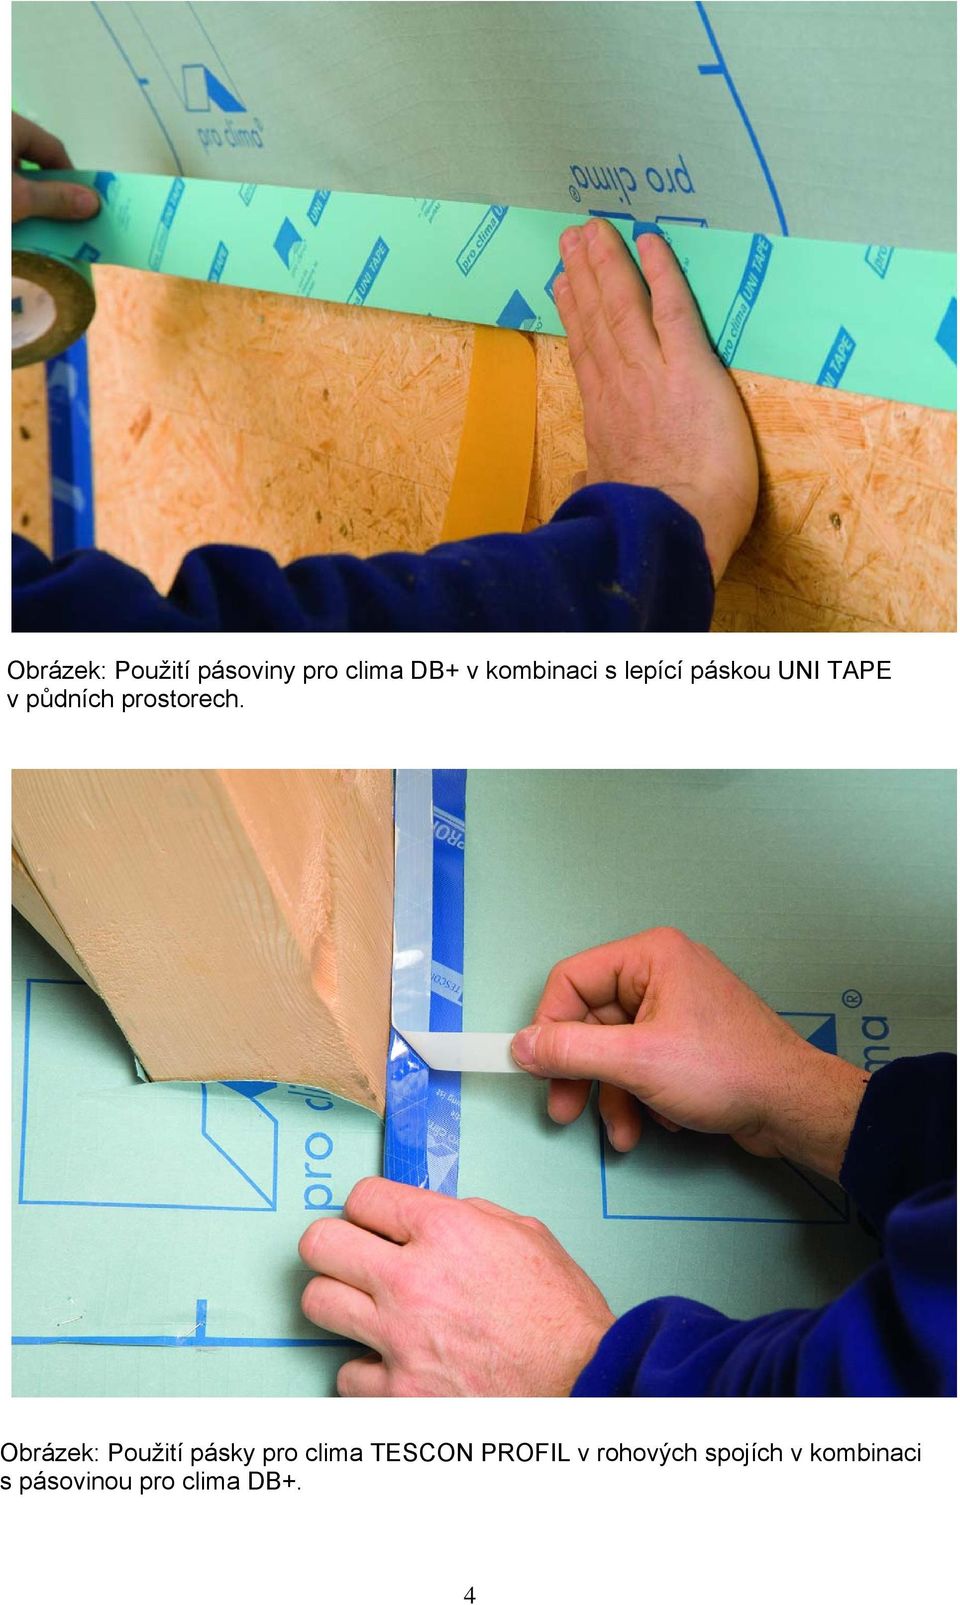 Obrázek: Použití pásky pro clima TESCON PROFIL v